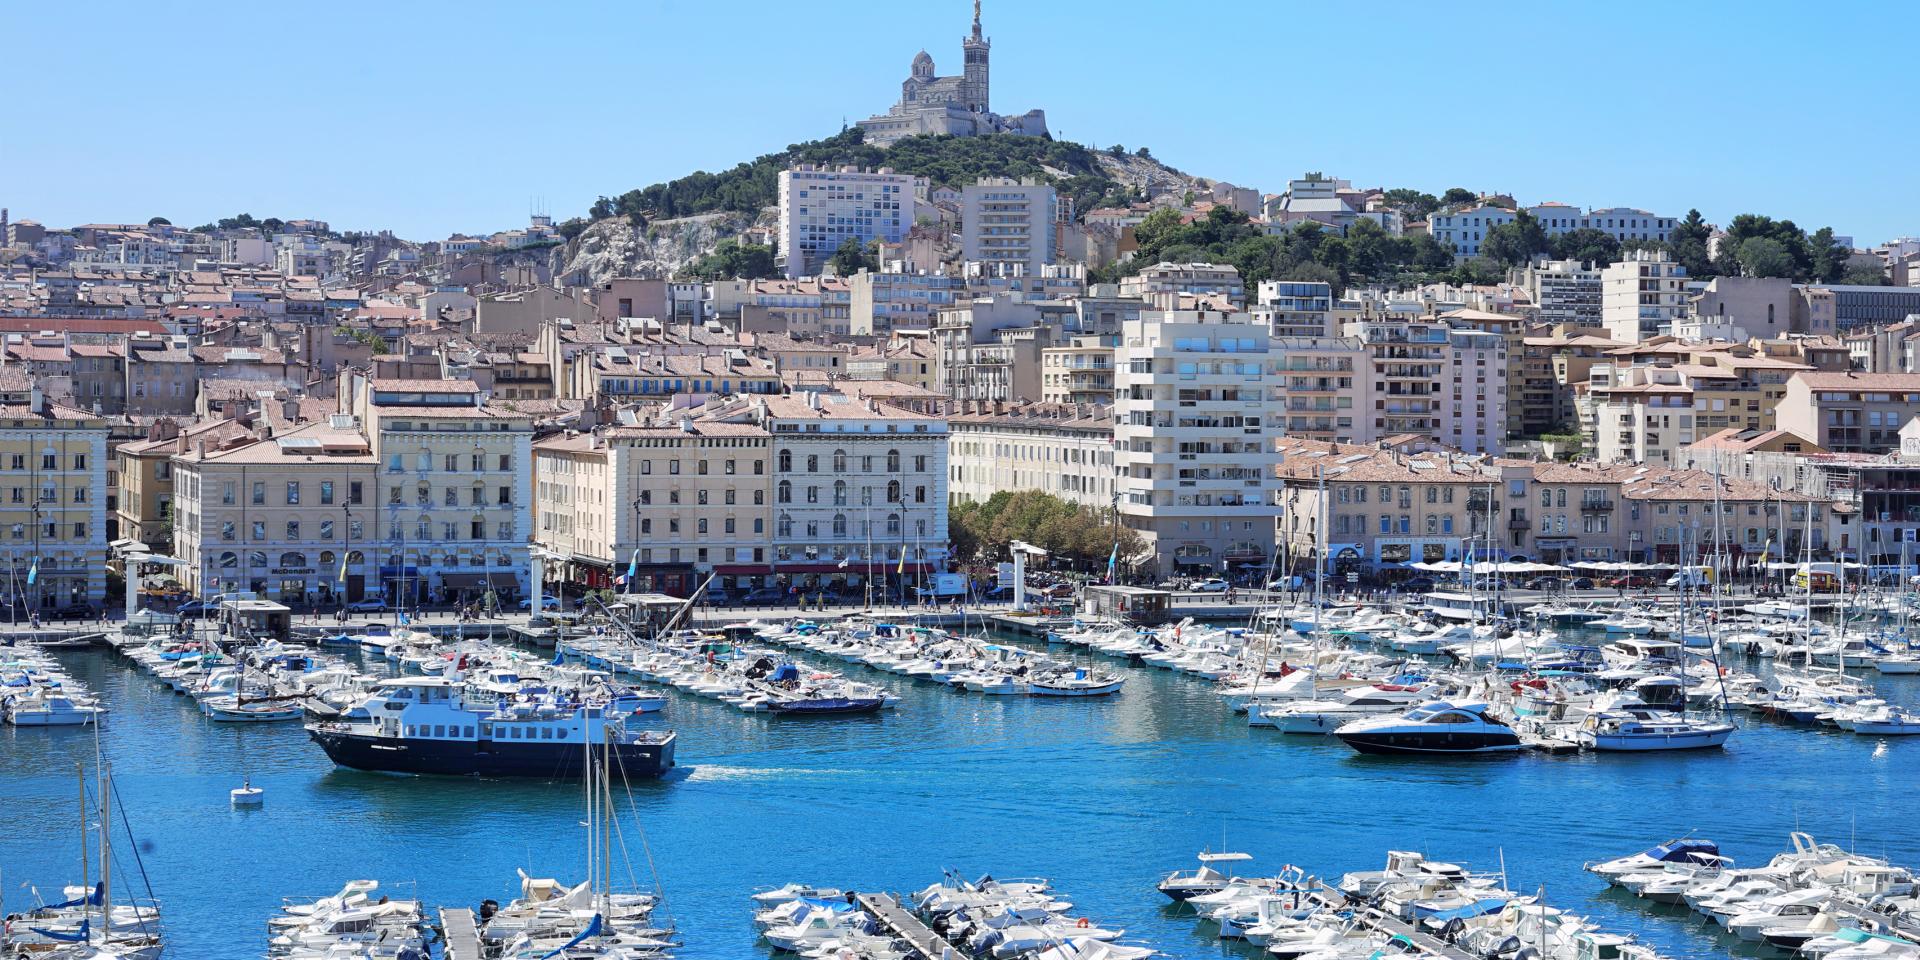 Vacances à Marseille  comment découvrir cette ville en toute sécurité